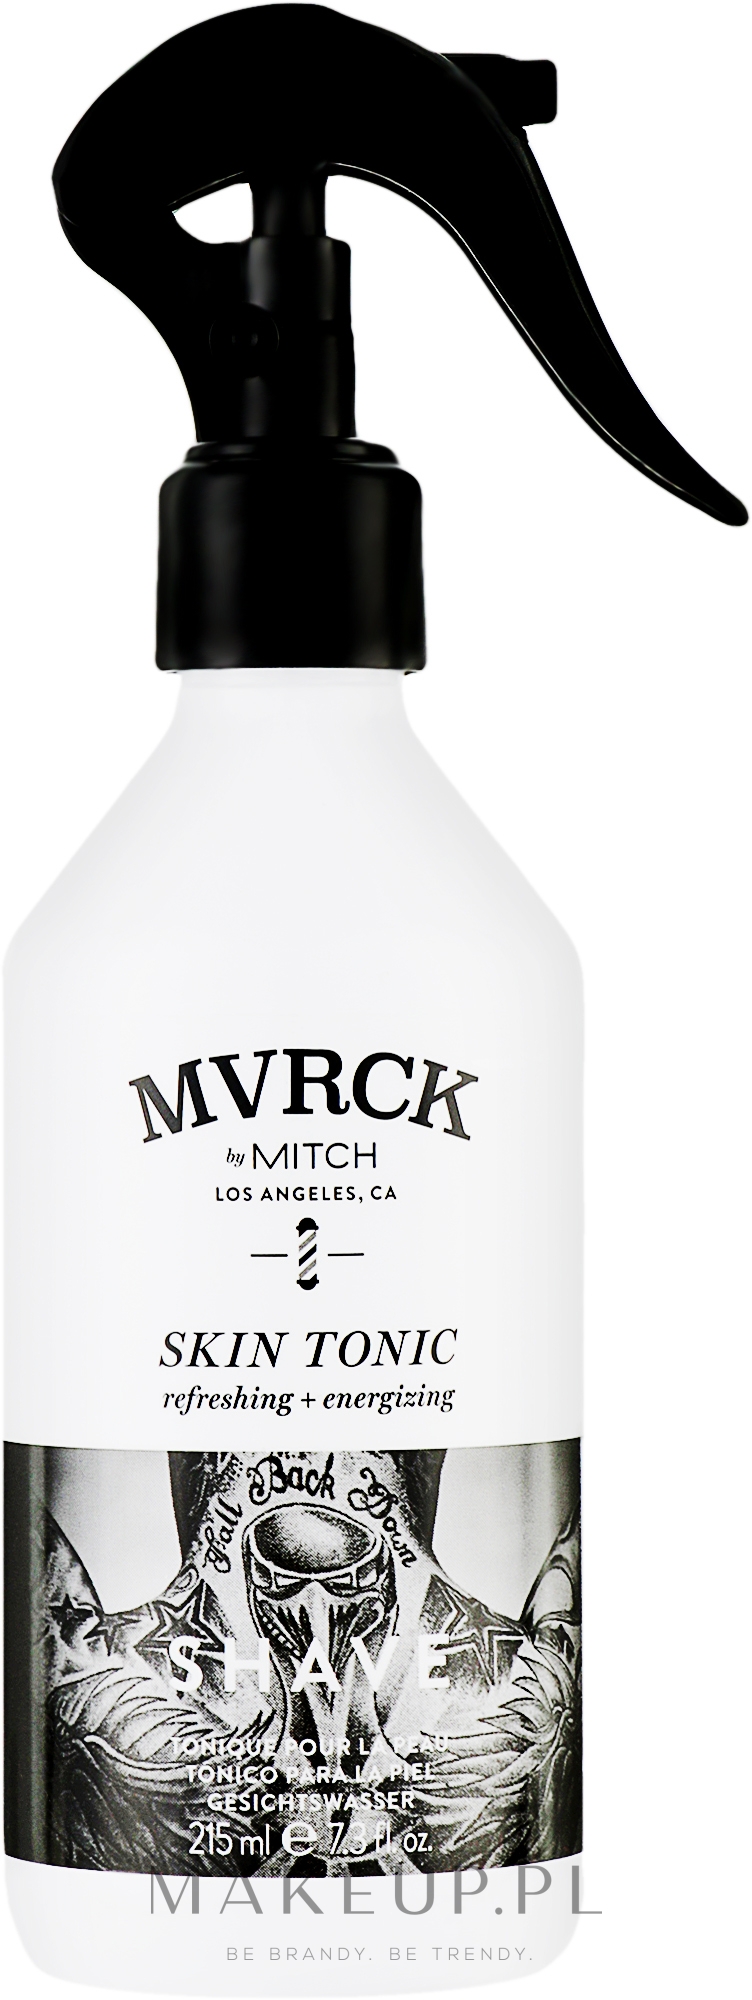 Odświeżający tonik energetyzujący do twarzy dla mężczyzn - Paul Mitchell MVRCK Skin Tonic — Zdjęcie 215 ml